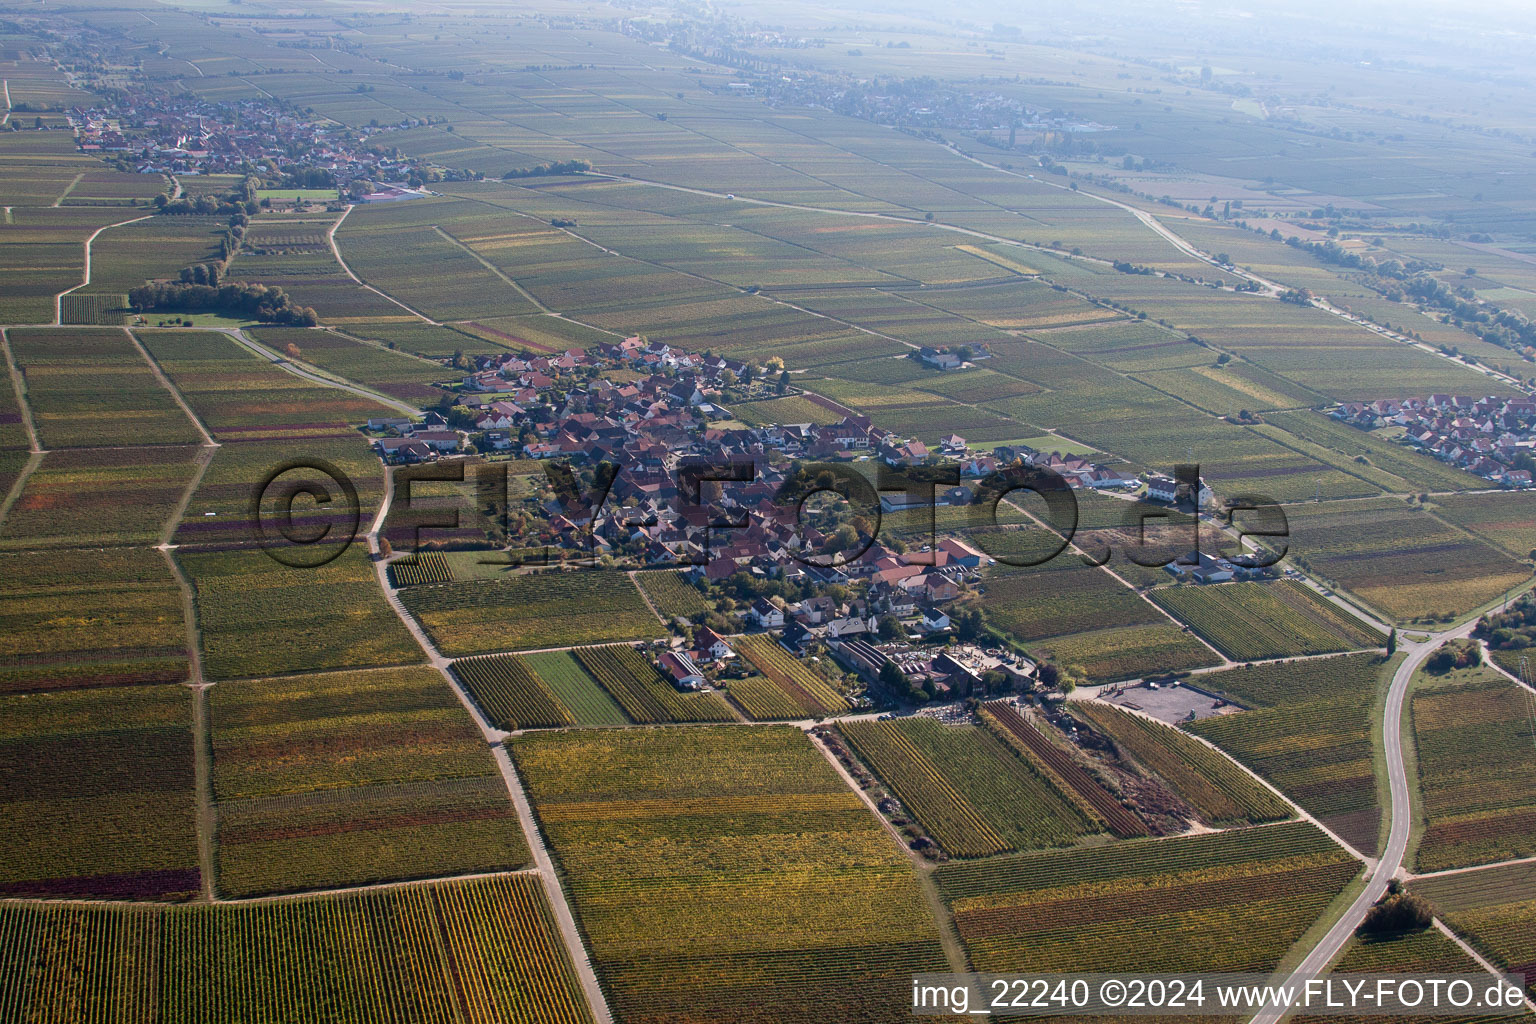 Luftbild von Dorf - Ansicht am Rande von Weinbergen in Flemlingen im Bundesland Rheinland-Pfalz, Deutschland